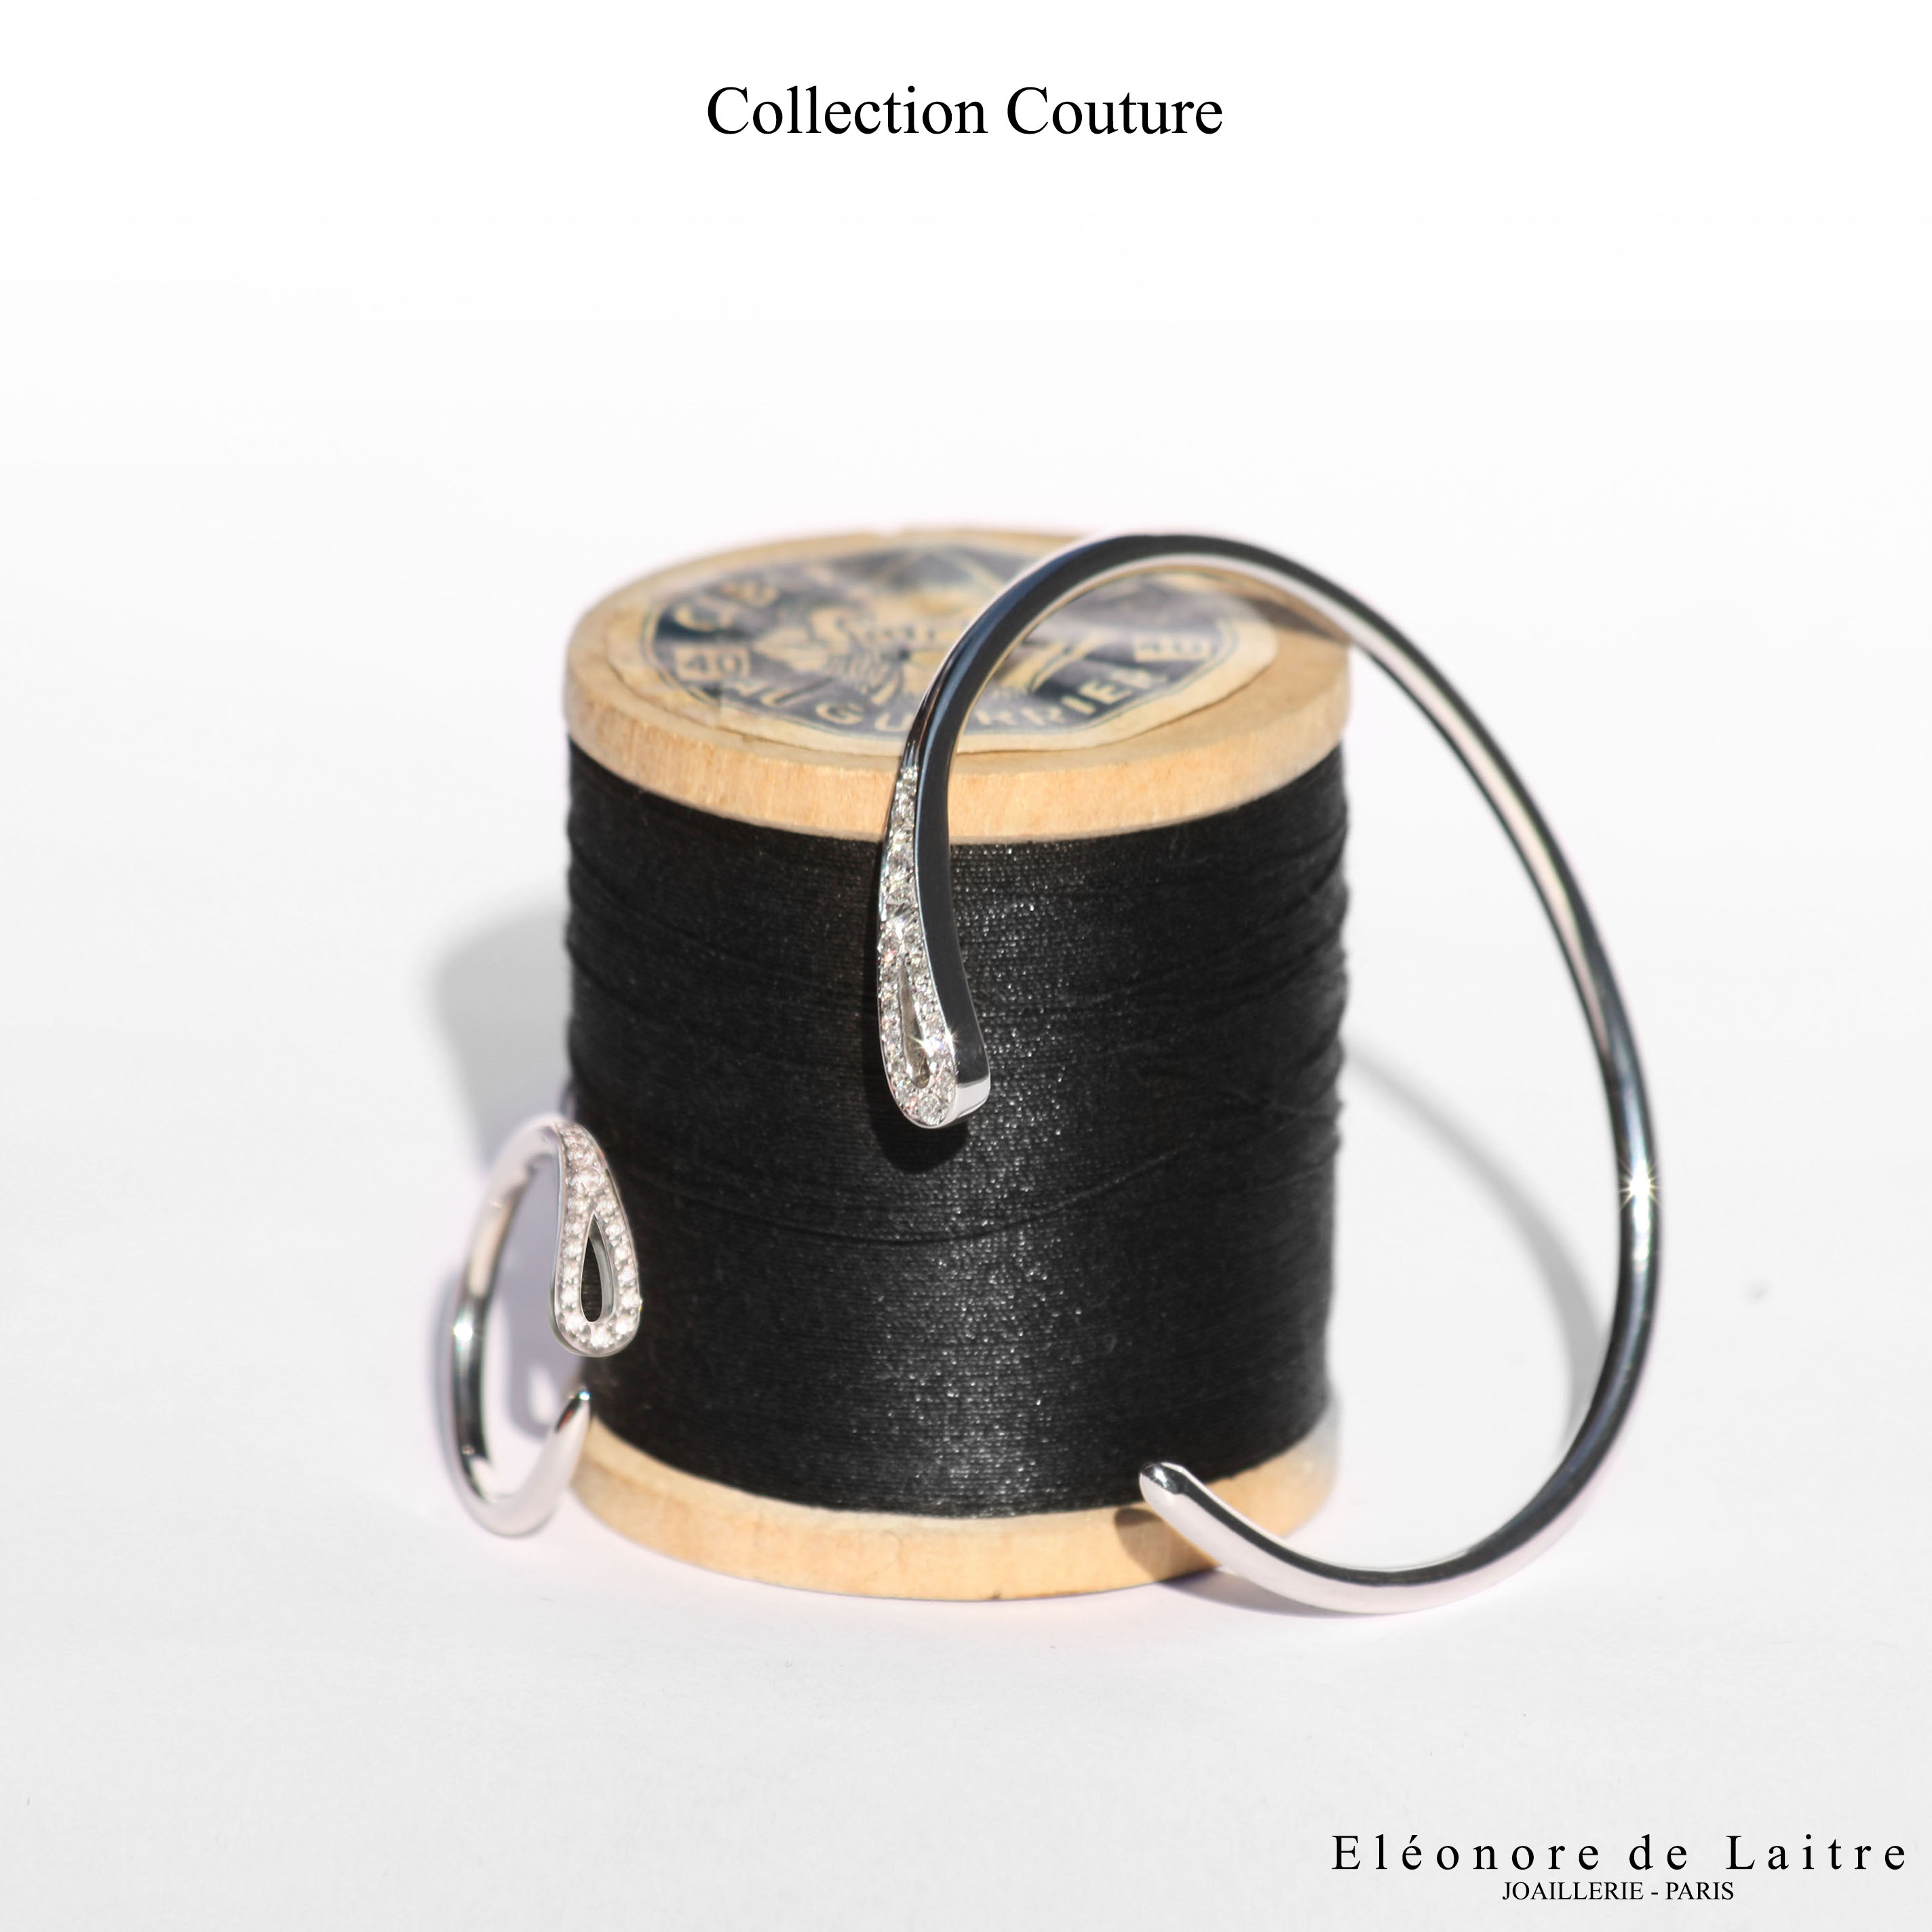 Eléonore de Laitre - Collection couture - Bague et Bracelet Aiguille